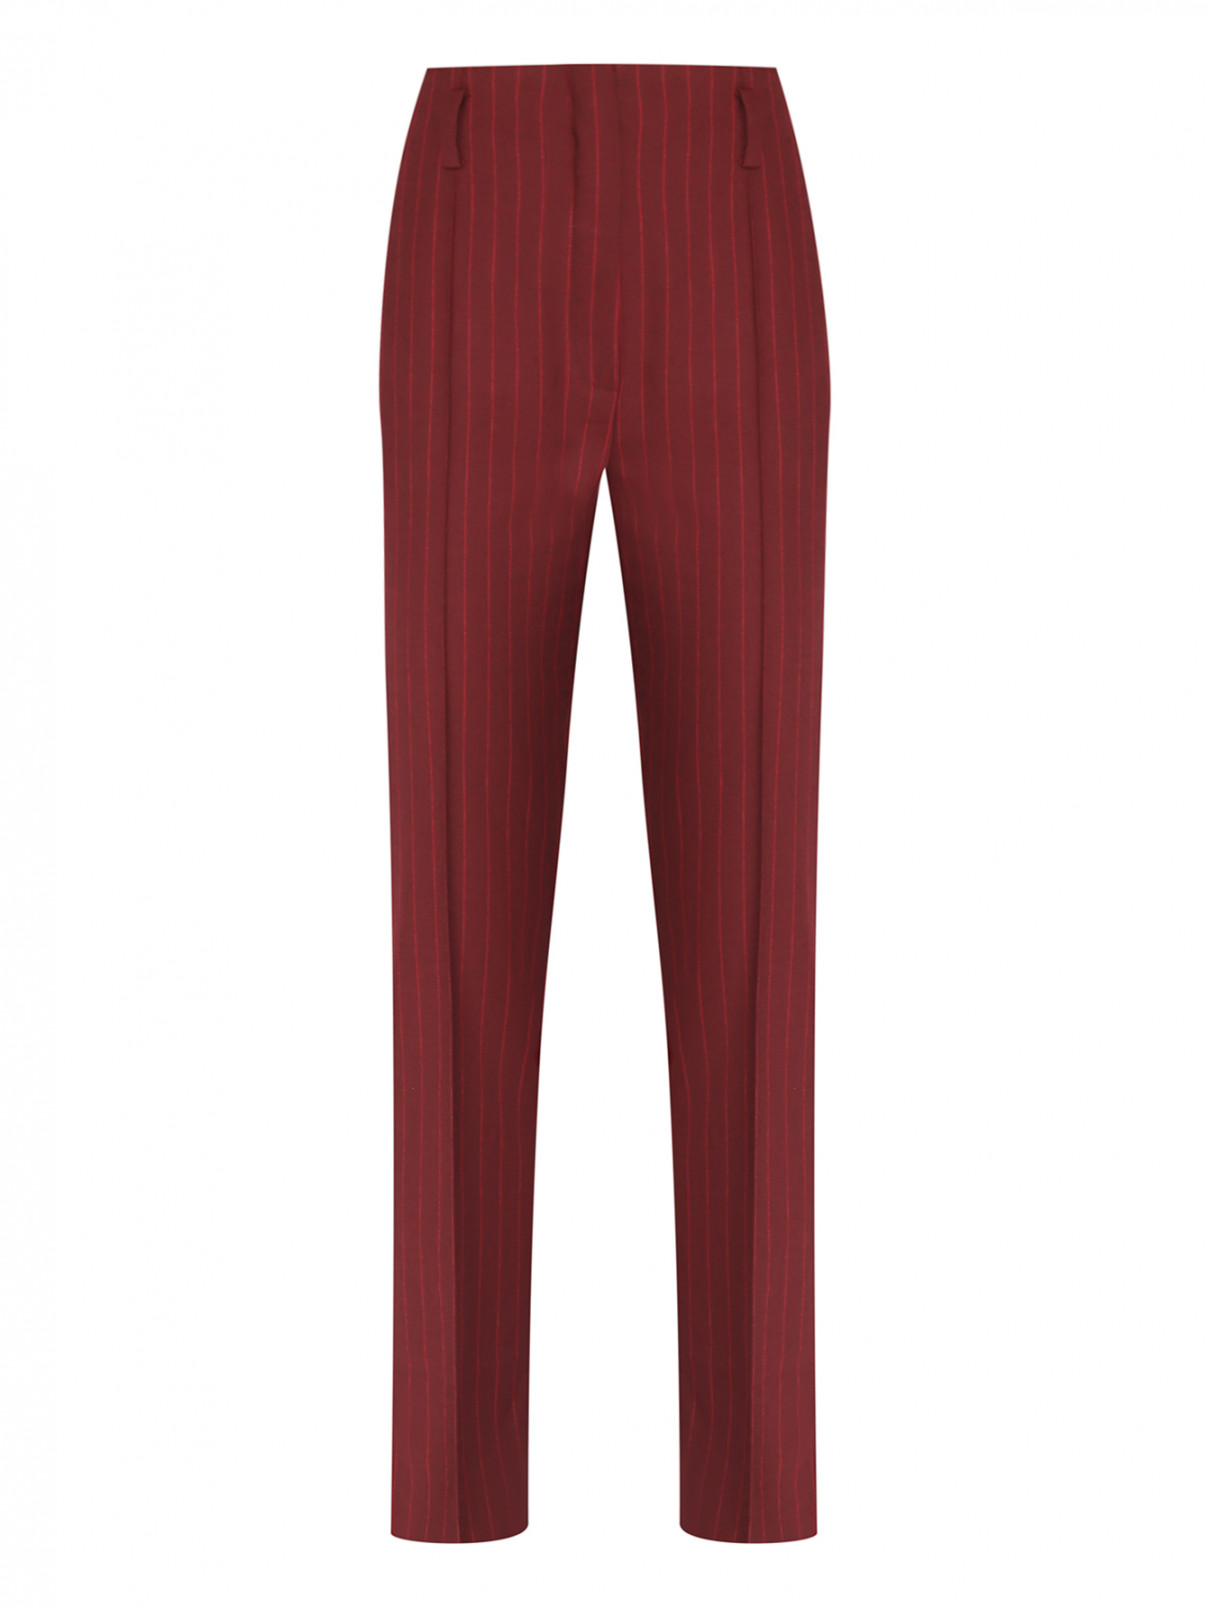 Классические брюки в тонкую полоску Luisa Spagnoli  –  Общий вид  – Цвет:  Красный